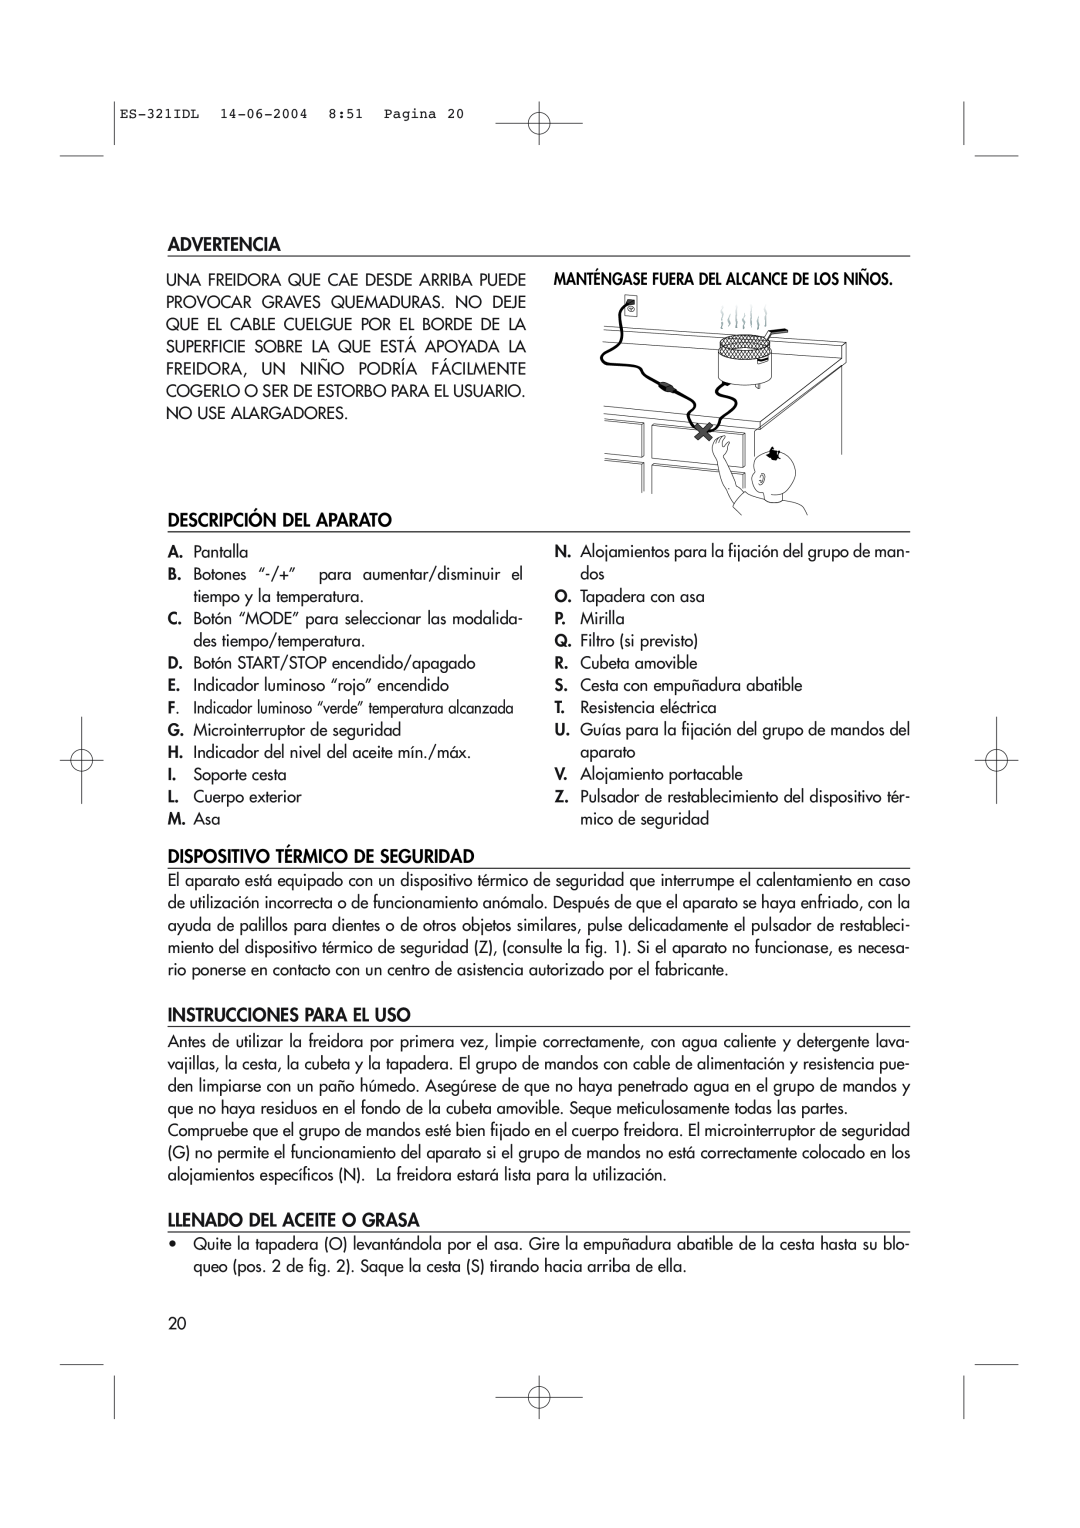 DeLonghi D14427DZ manual Advertencia, Descripción Del Aparato, Dispositivo Térmico De Seguridad, Instrucciones Para El Uso 